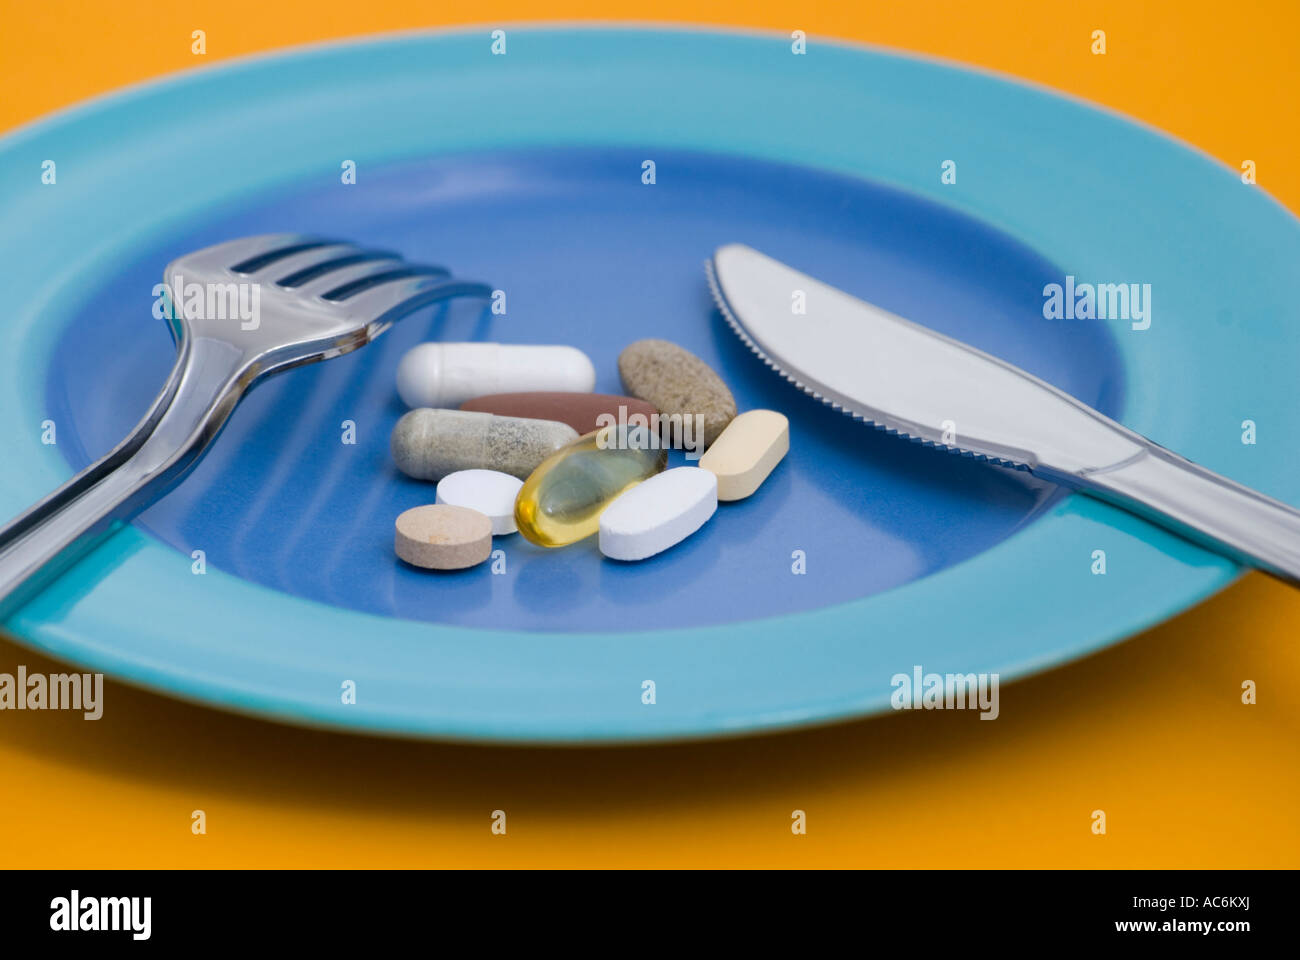 Pillole di vitamine e integratori dietetici sulla piastra con posate Foto Stock